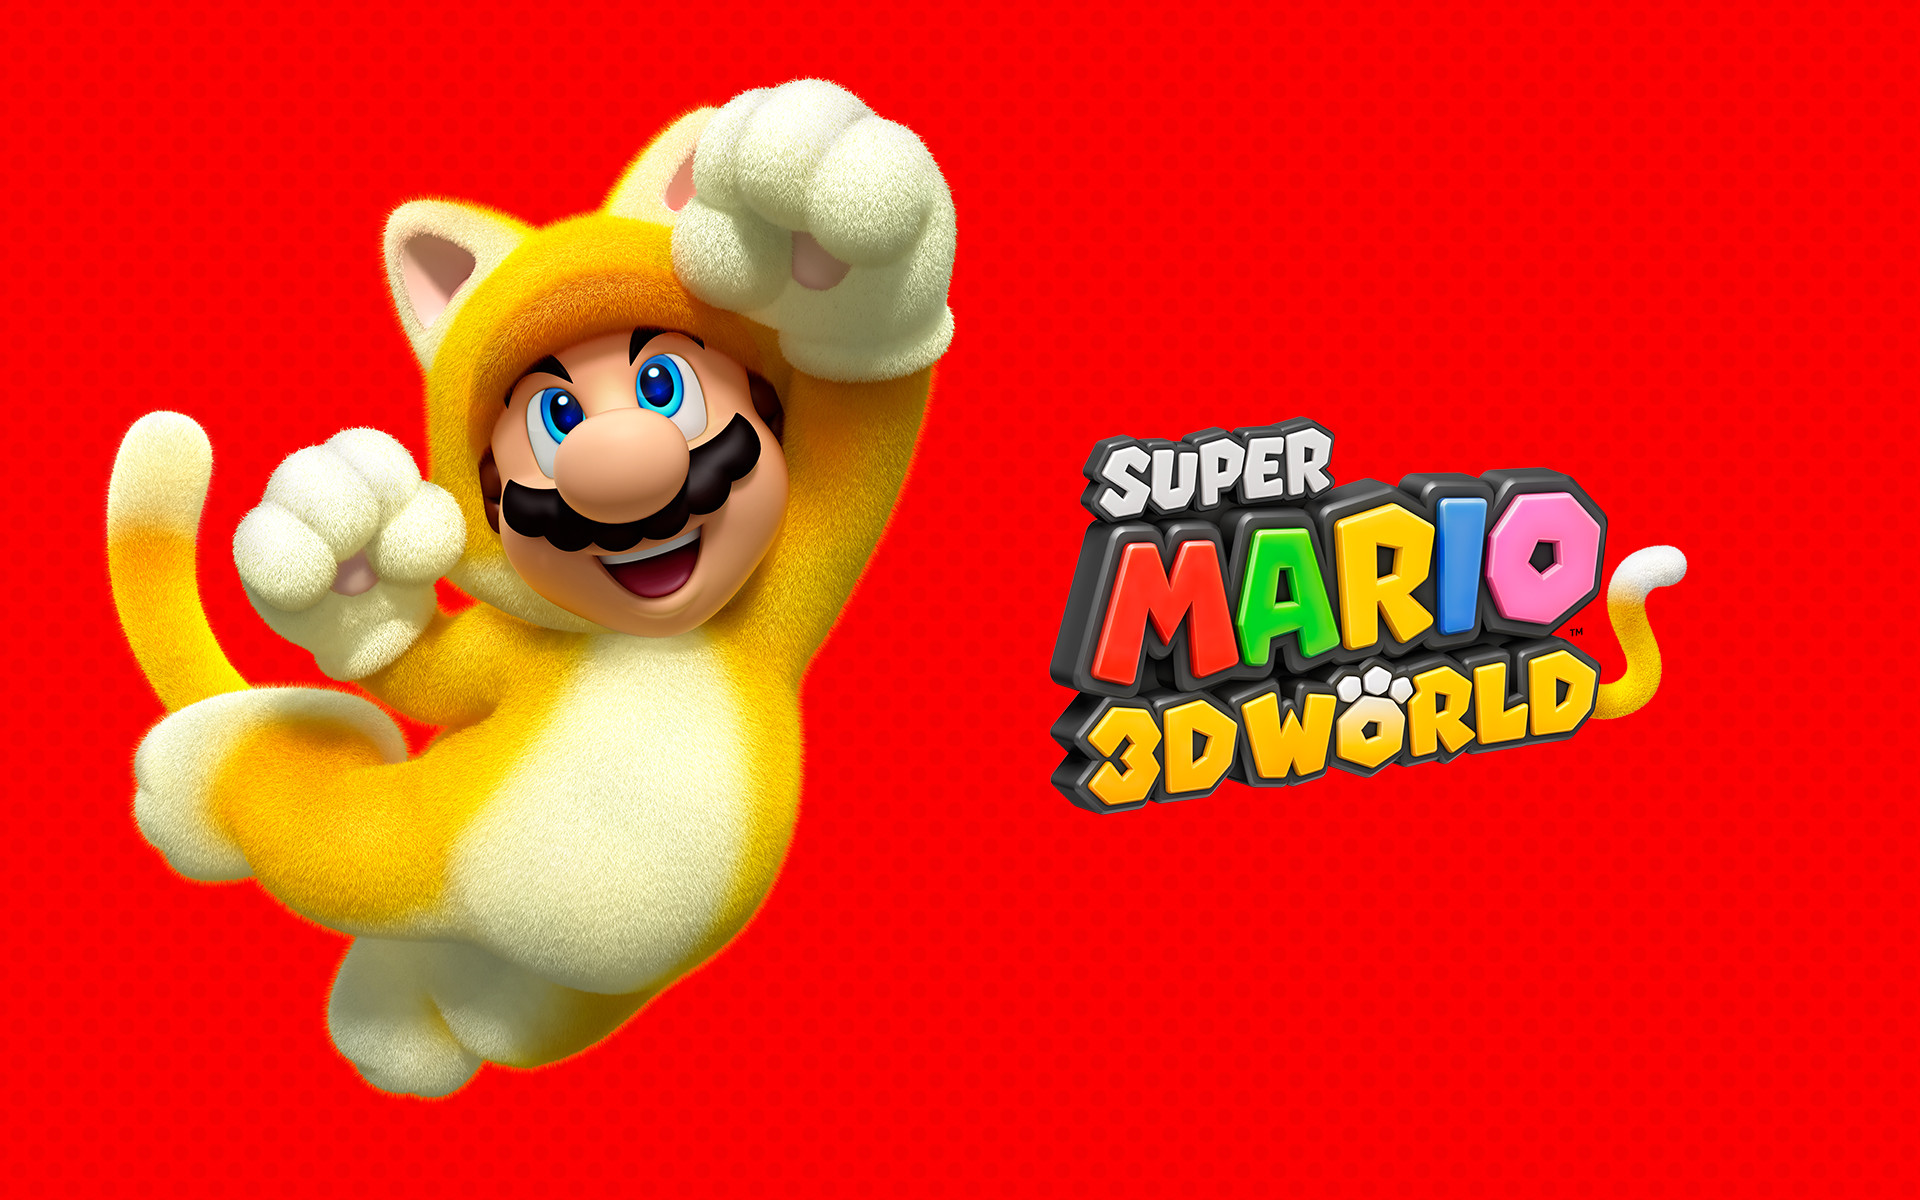 1920x1200 ... Super Mario 3D World Wallpaper Cat Mario 1920 x 1200